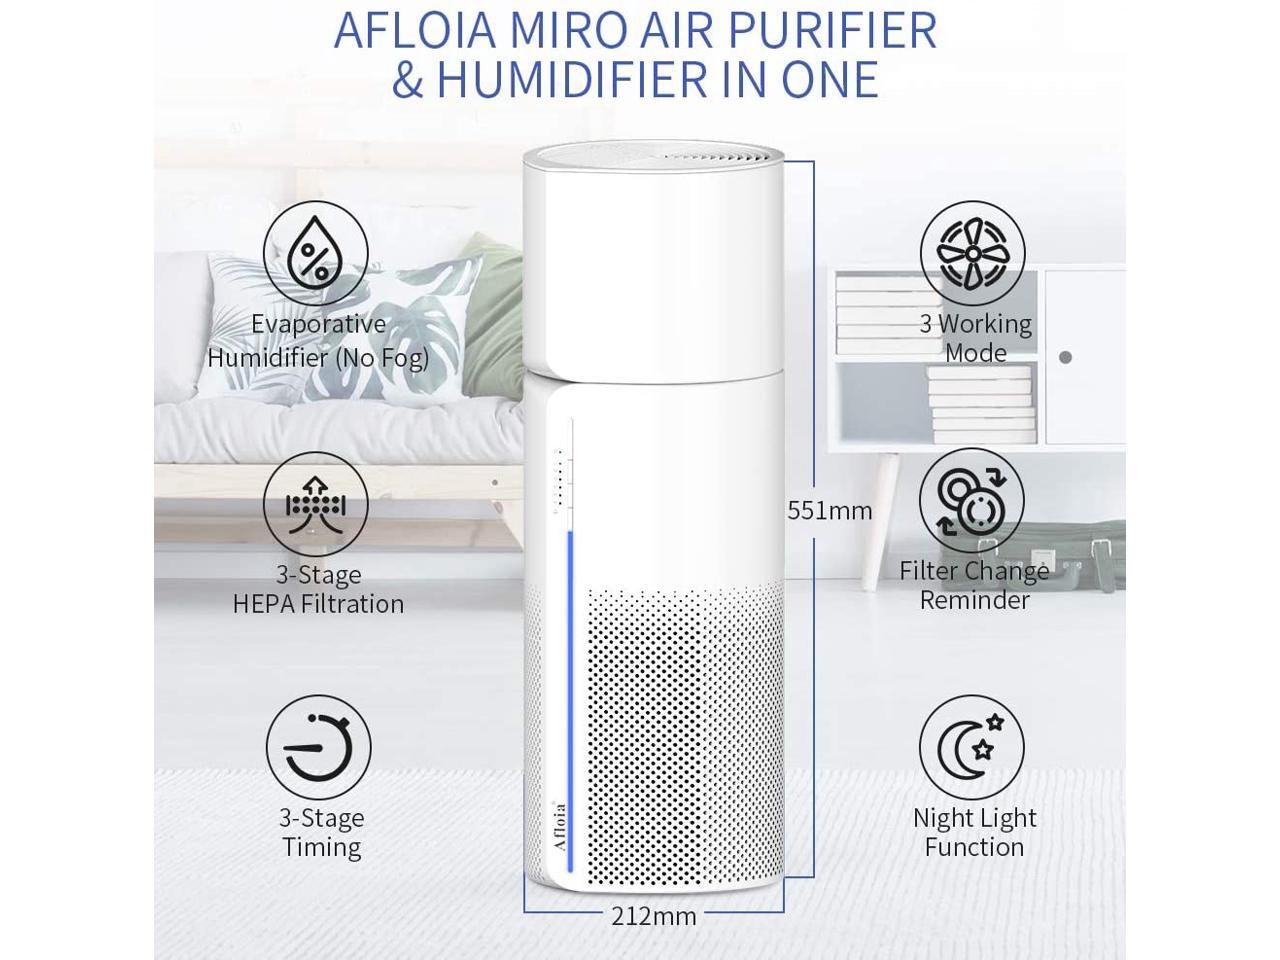 Afloia Luftreiniger Hepa Filter